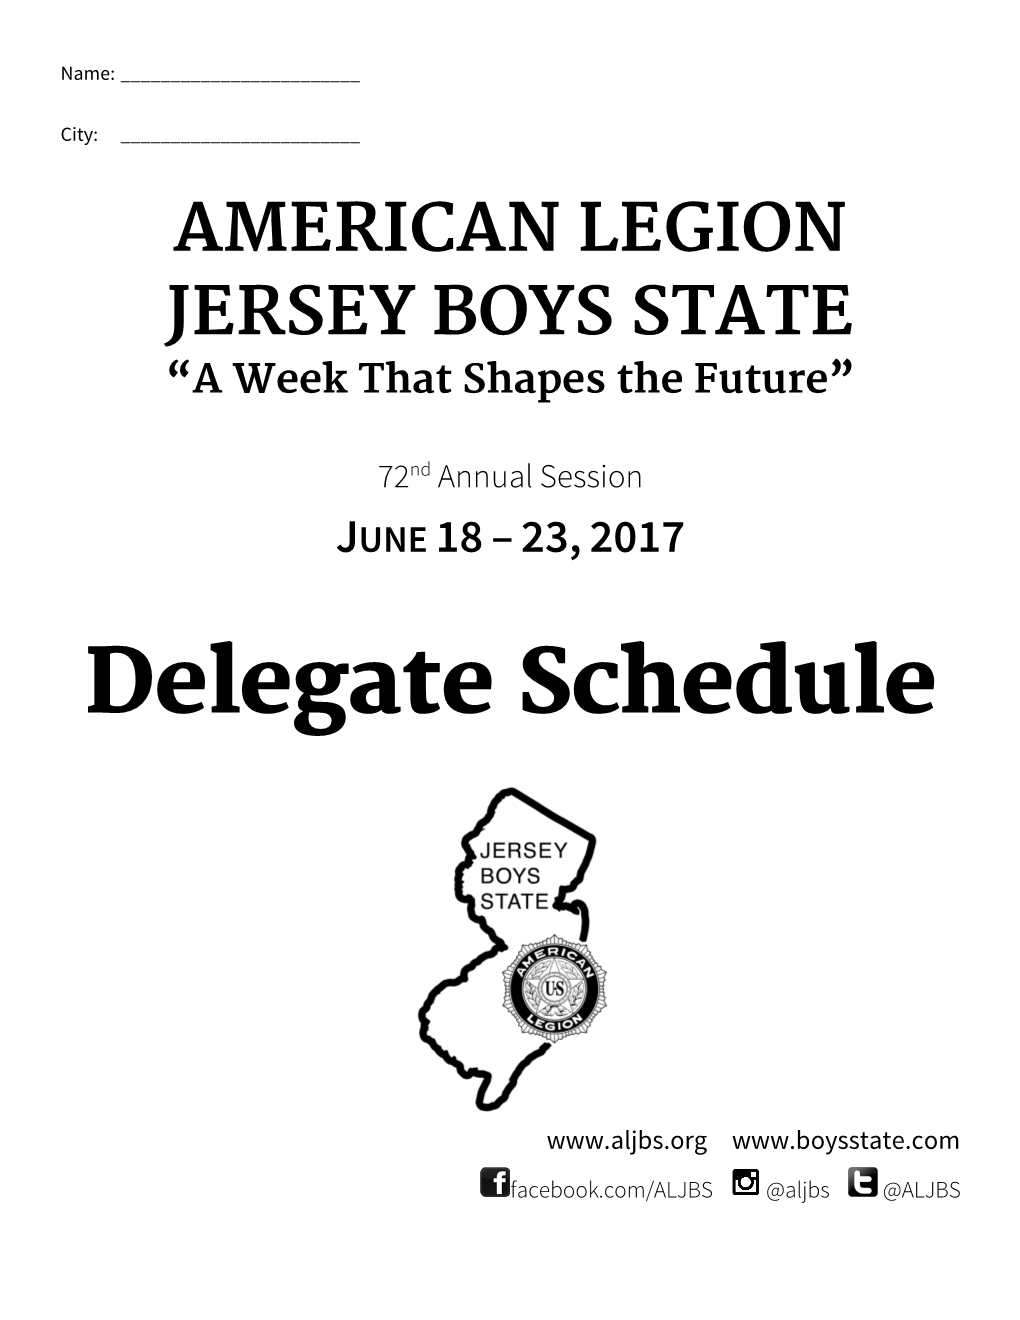 Delegate Schedule